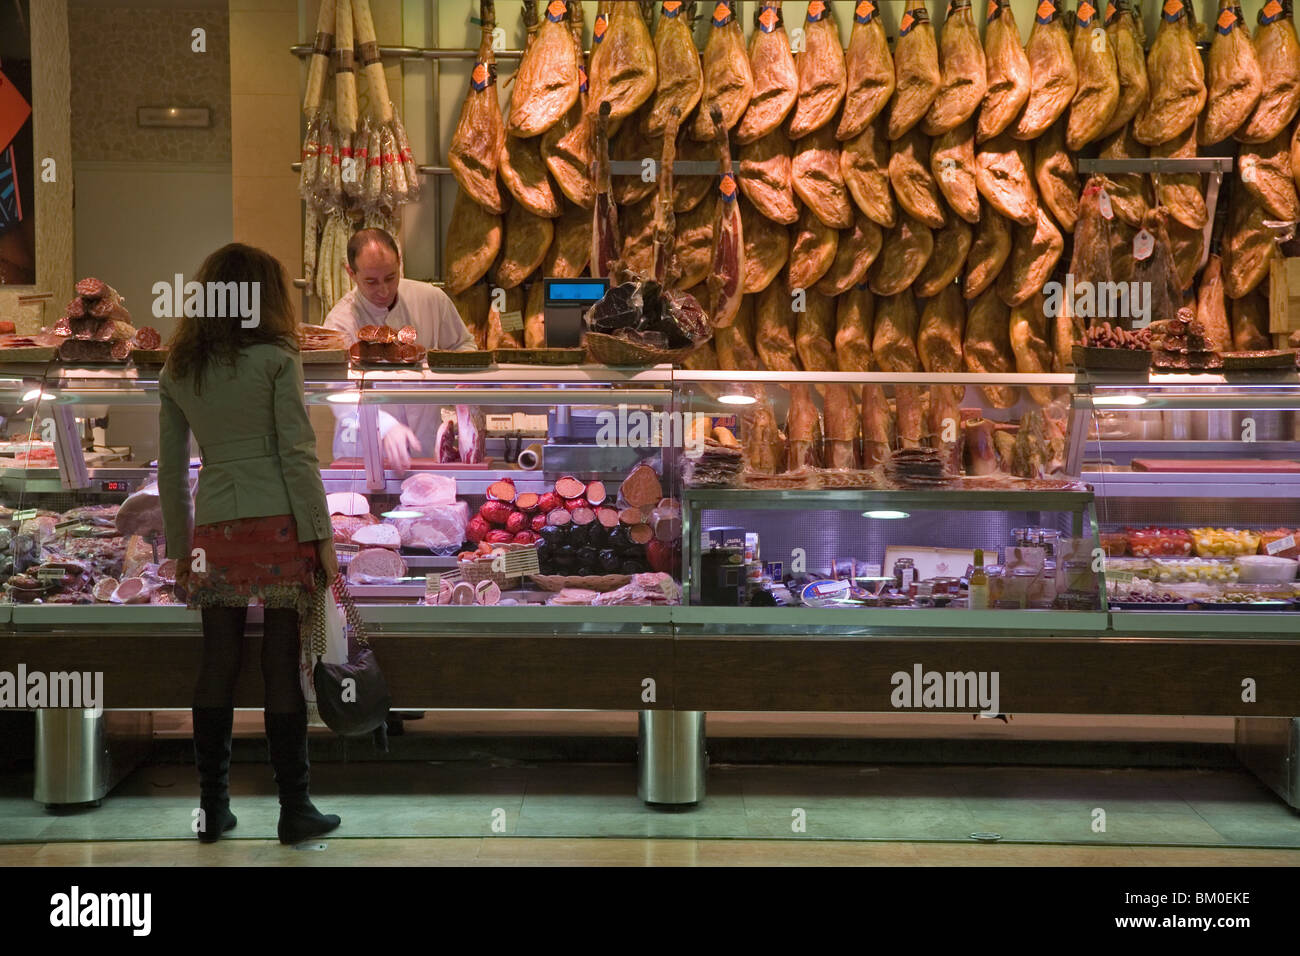 Hams, cold meats, market, Valencia, Spain Stock Photo